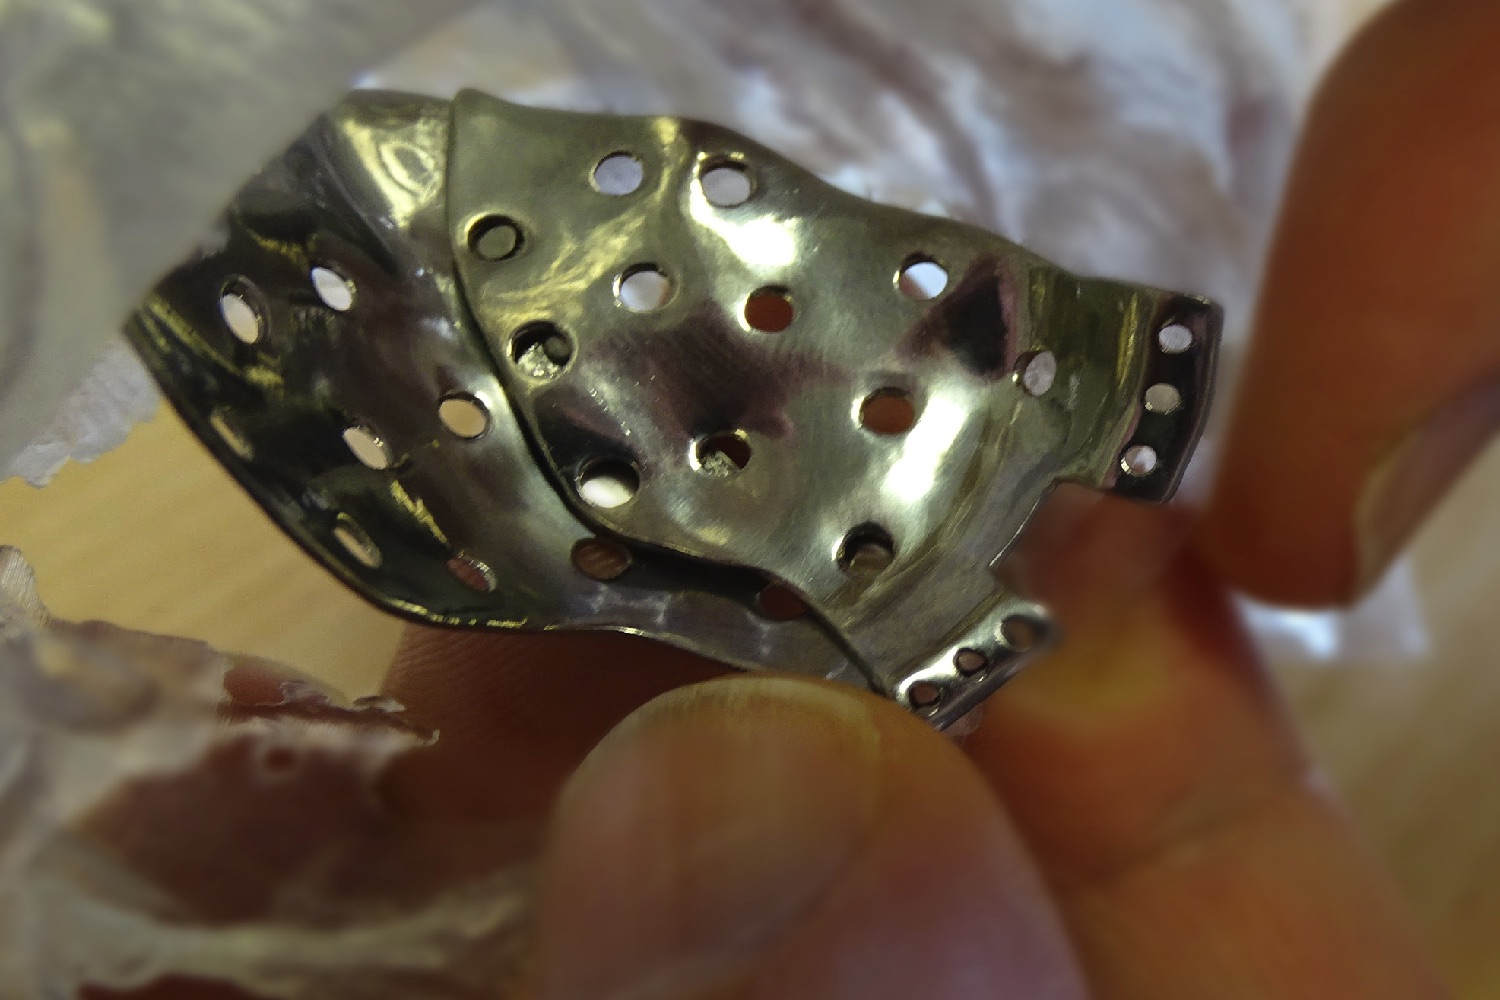 titanium implants 3d printing implant closeup